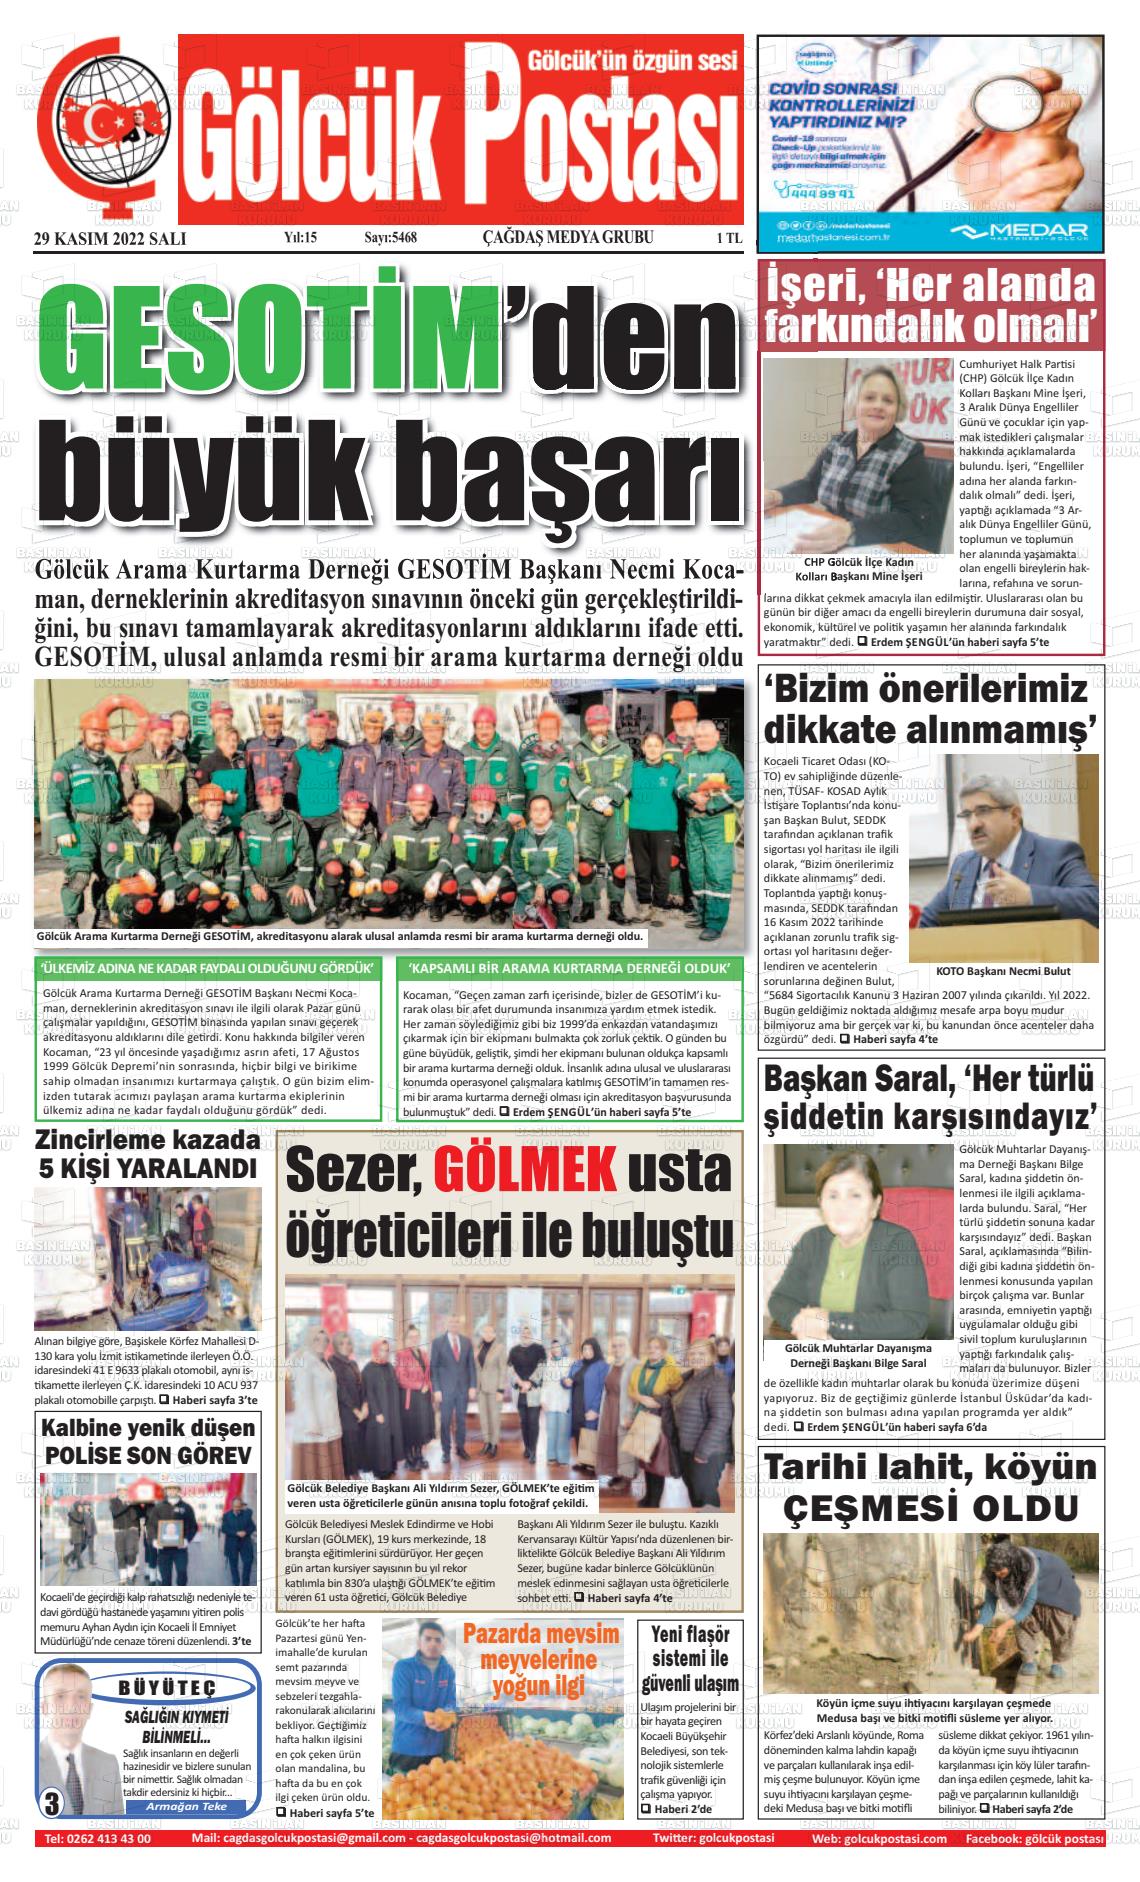 29 Kasım 2022 Gölcük Postasi Gazete Manşeti